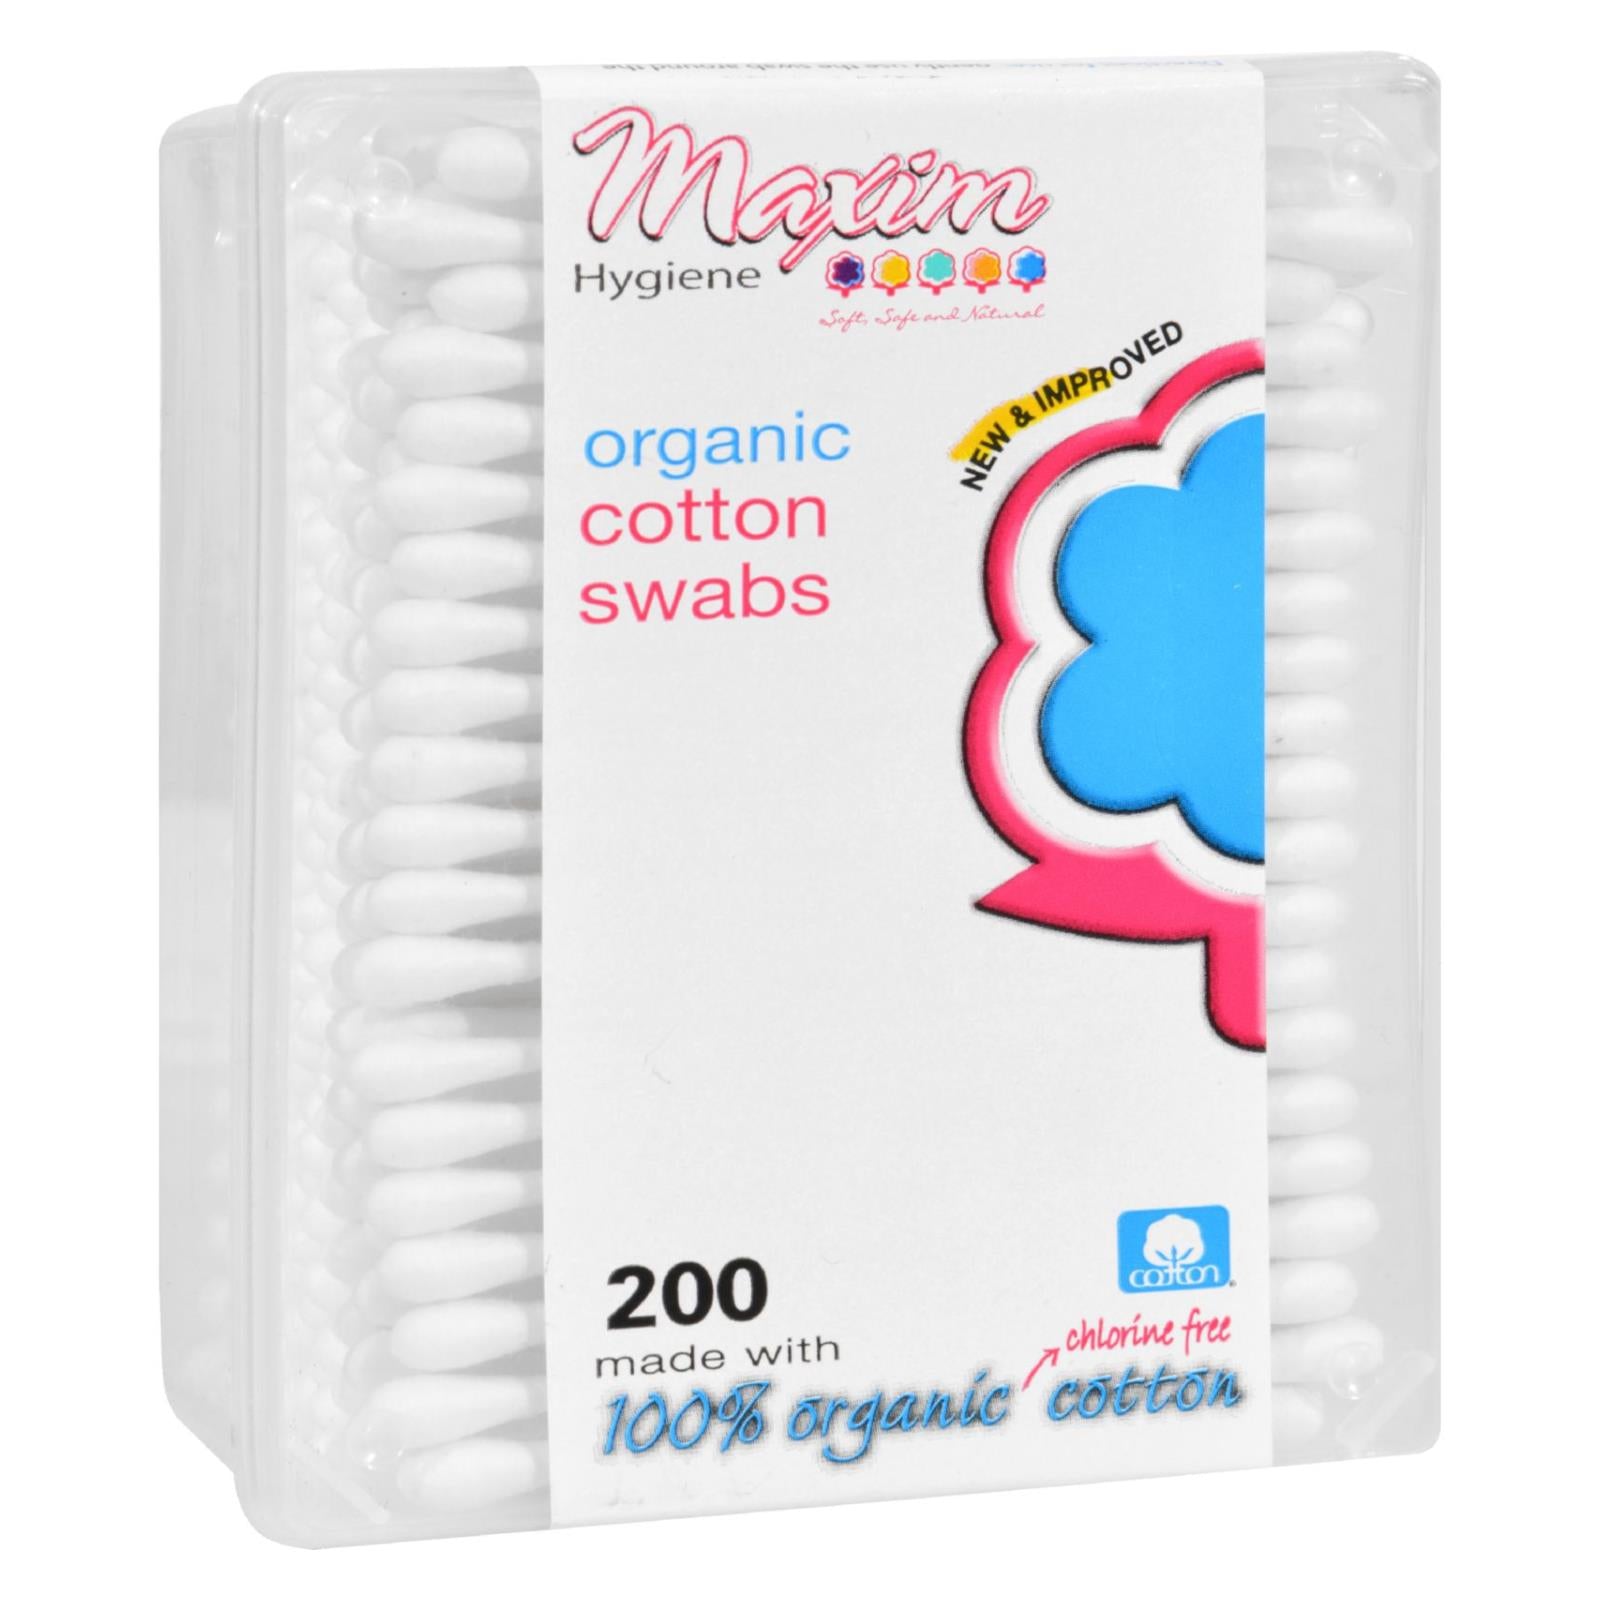 Produits d'hygiène Maxim, Tampons en coton biologique de Maxim Hygiene Products - Boîte d'allumettes - 200 unités